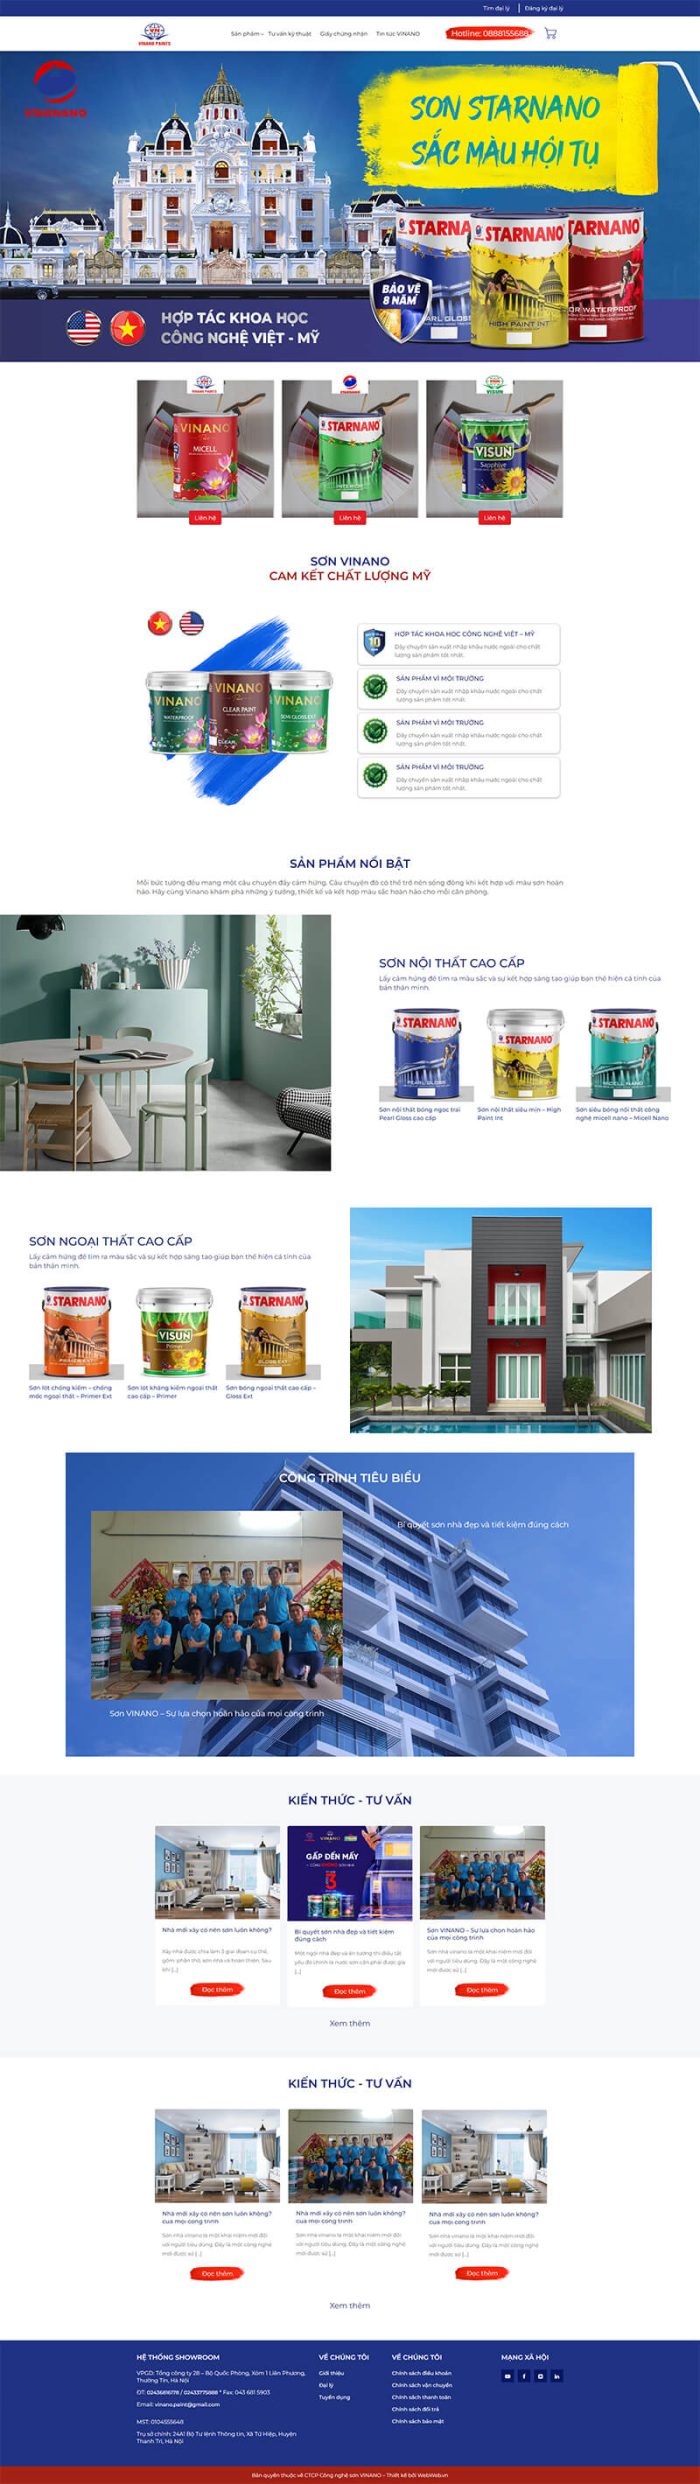 Thiết kế web công ty sơn Vinano